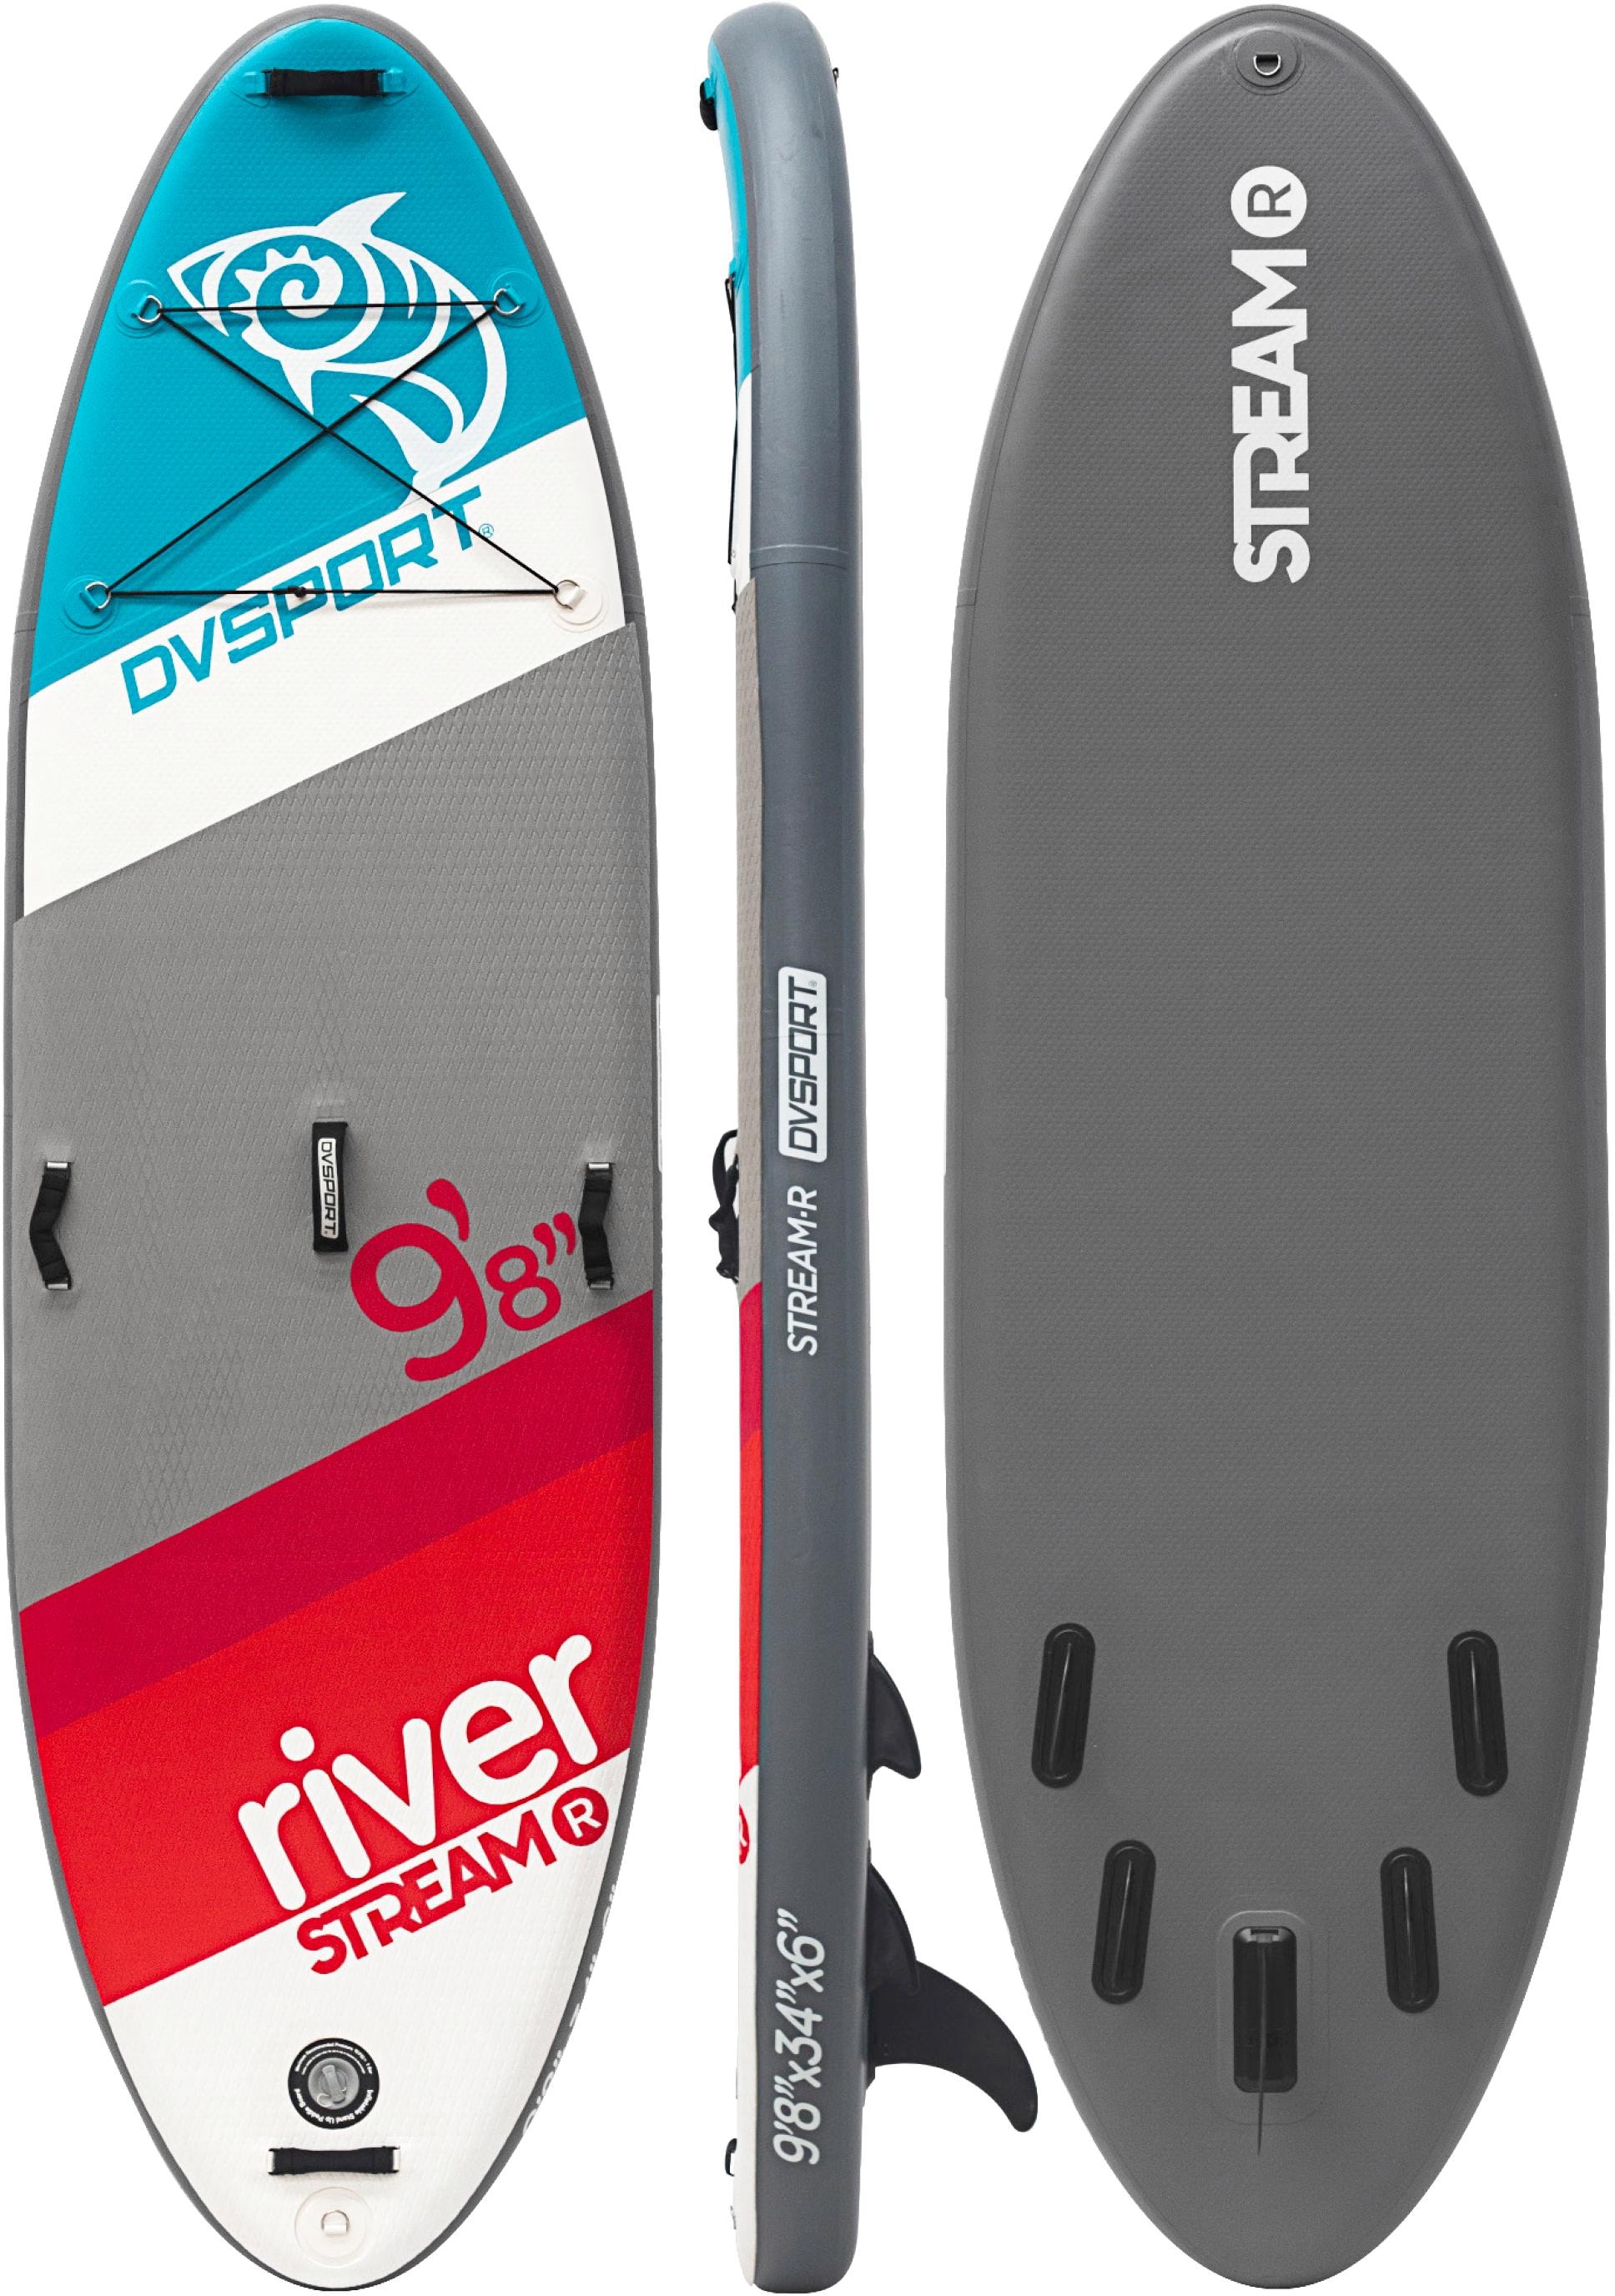 DVSPORT Inflatable SUP-Board kaufen und mit »DVSport 9.8«, Paddel, Stand-up-Paddleset (Set, 4-tlg., River bequem Pumpe Transportrucksack)